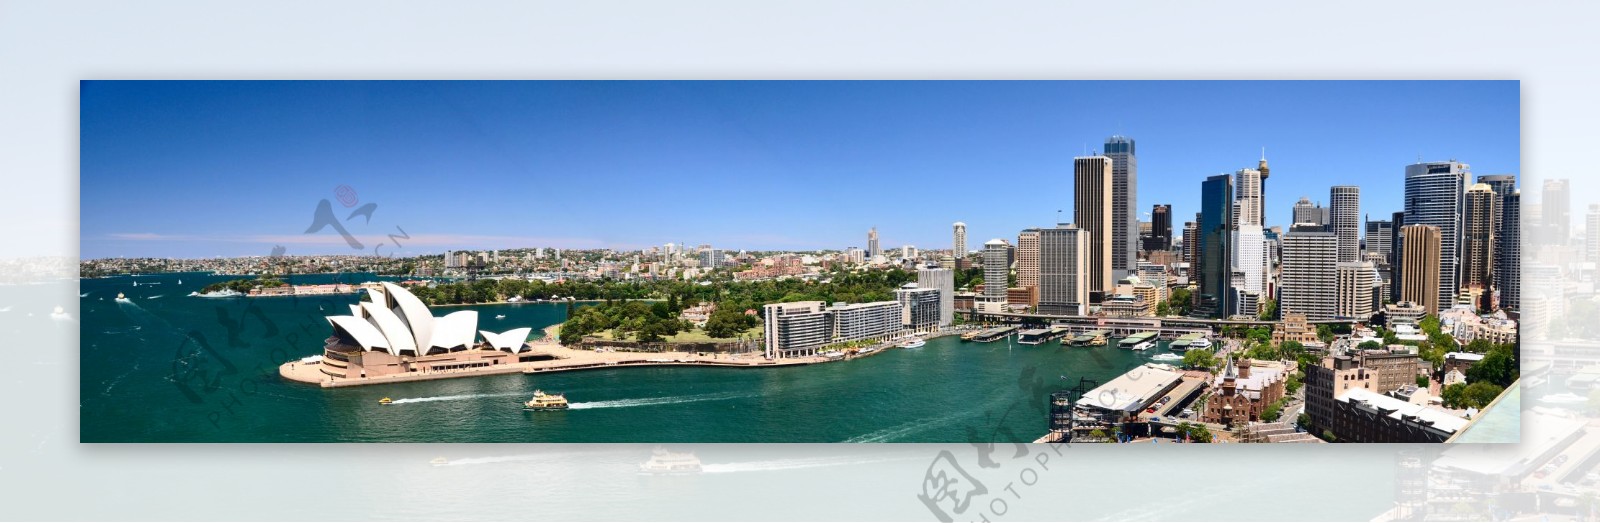 澳大利亚悉尼全景摄影图片